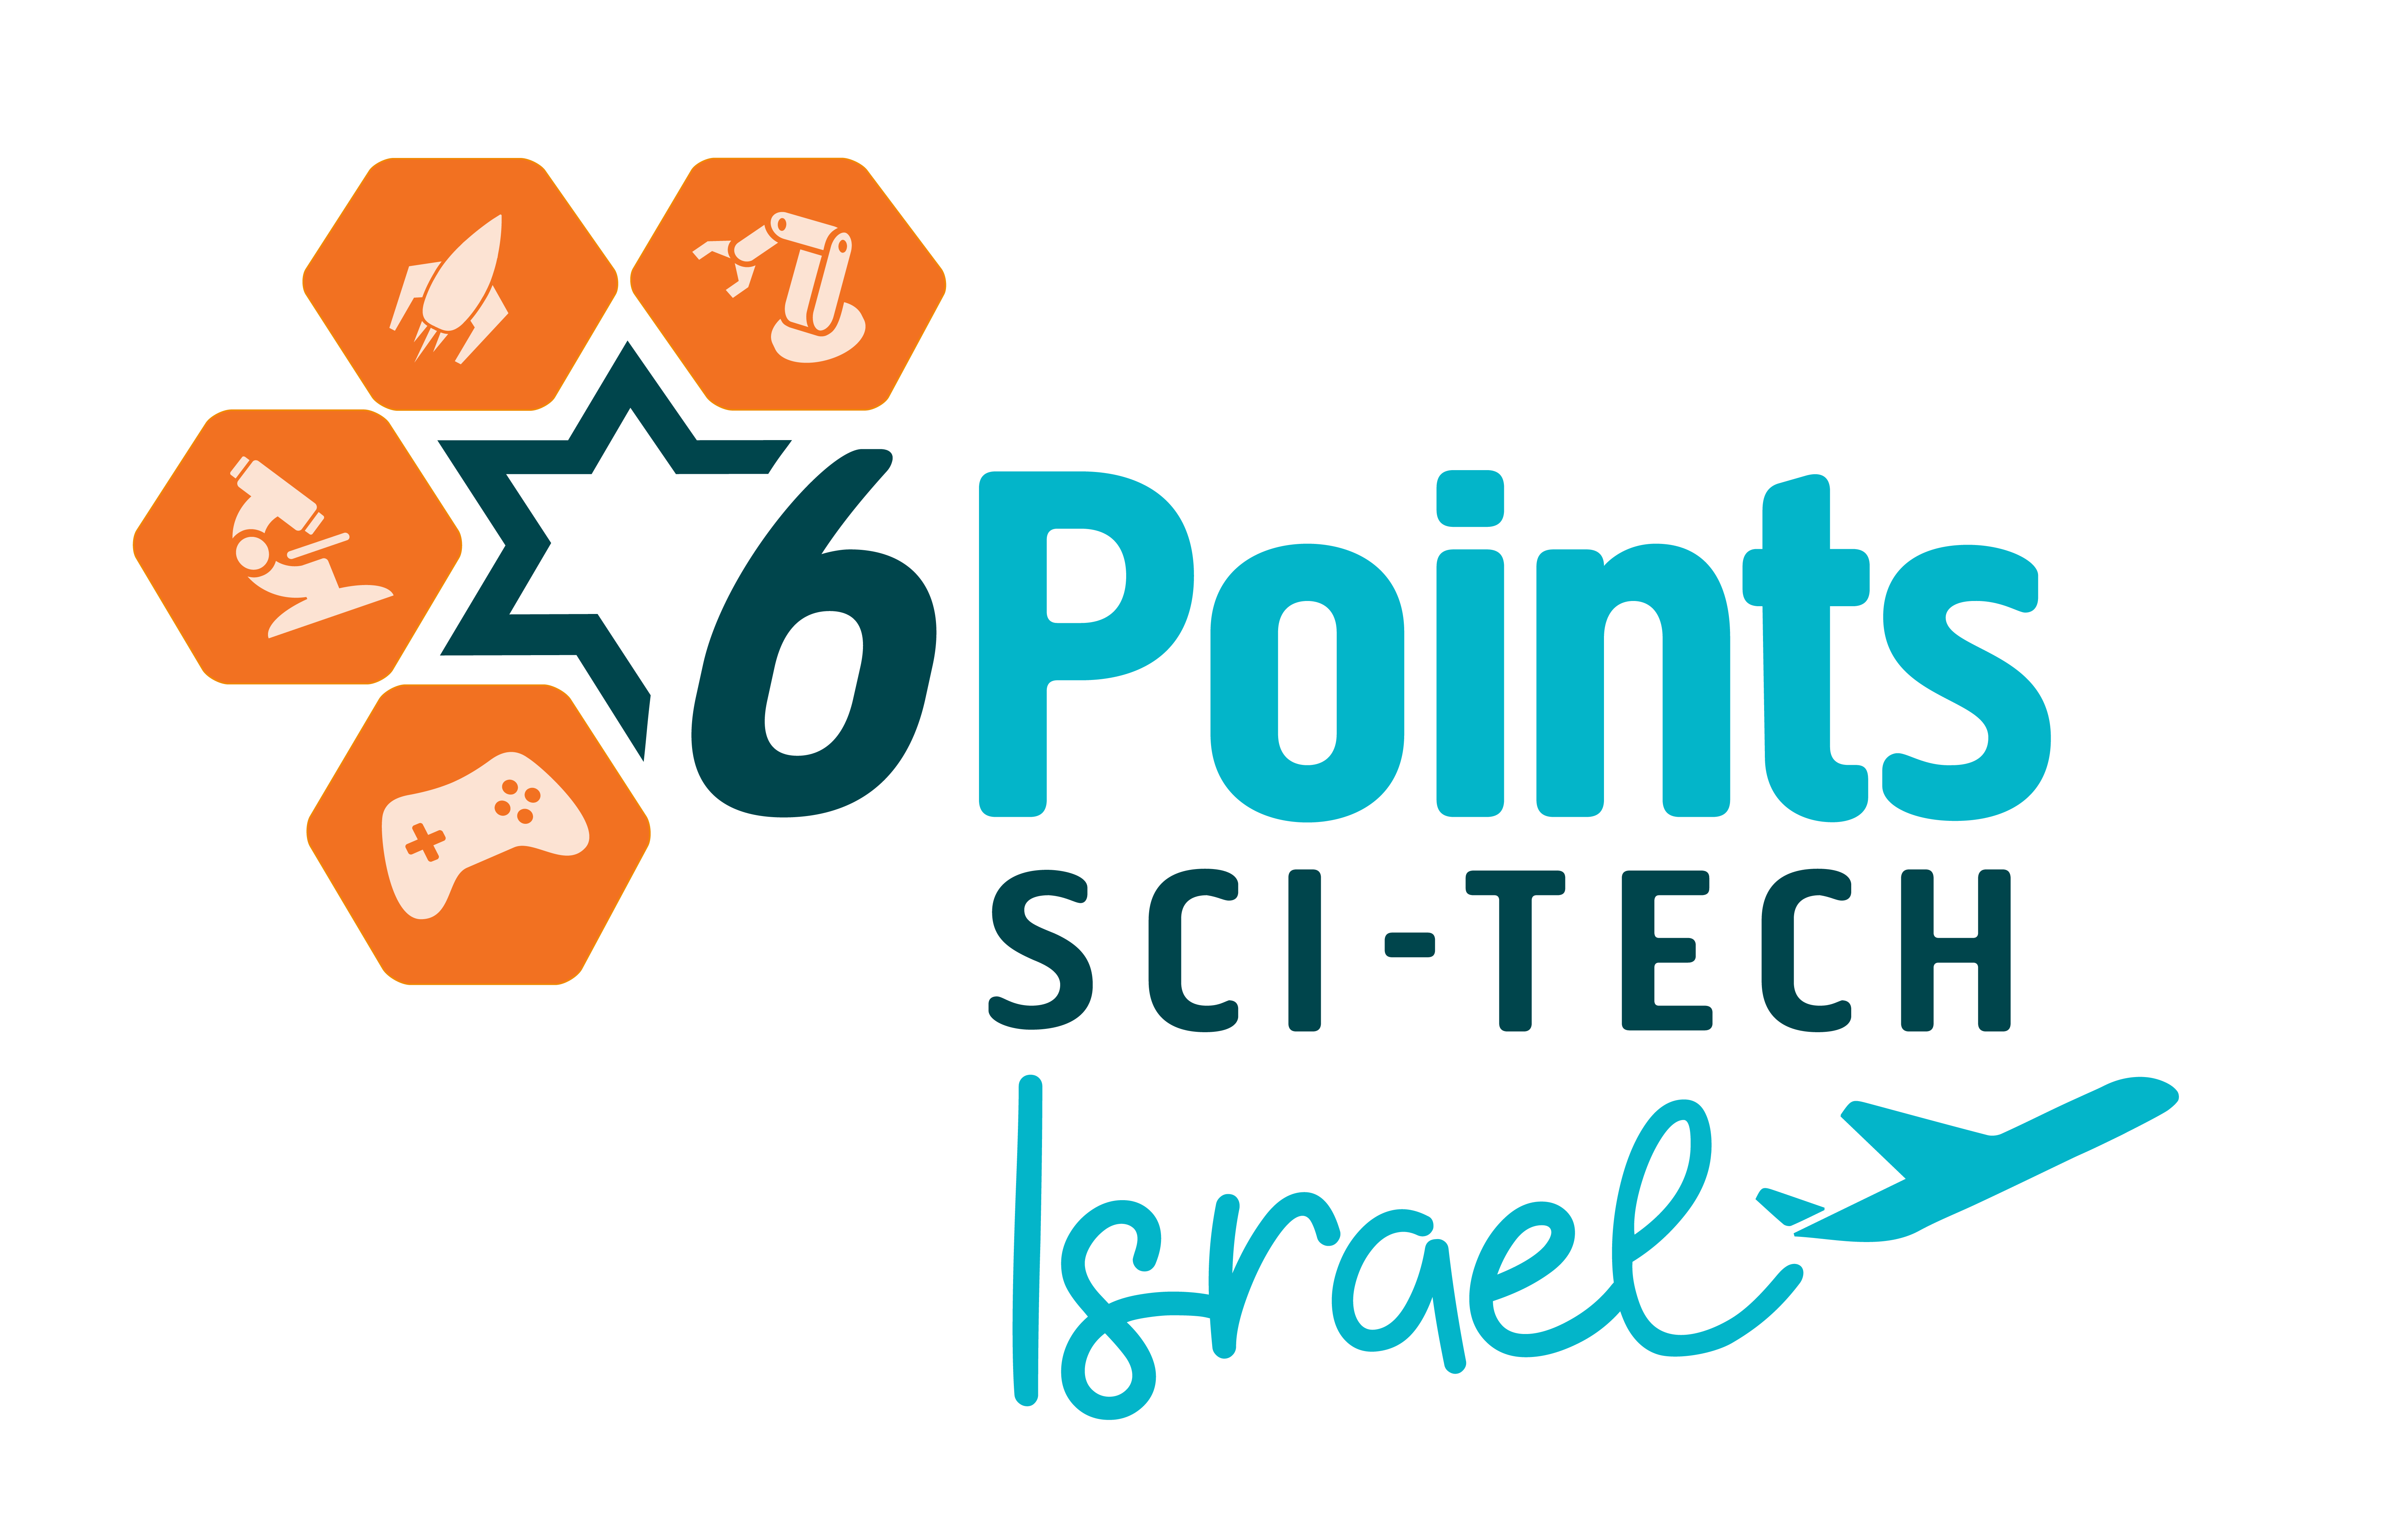 Sci-Tech Israel logo